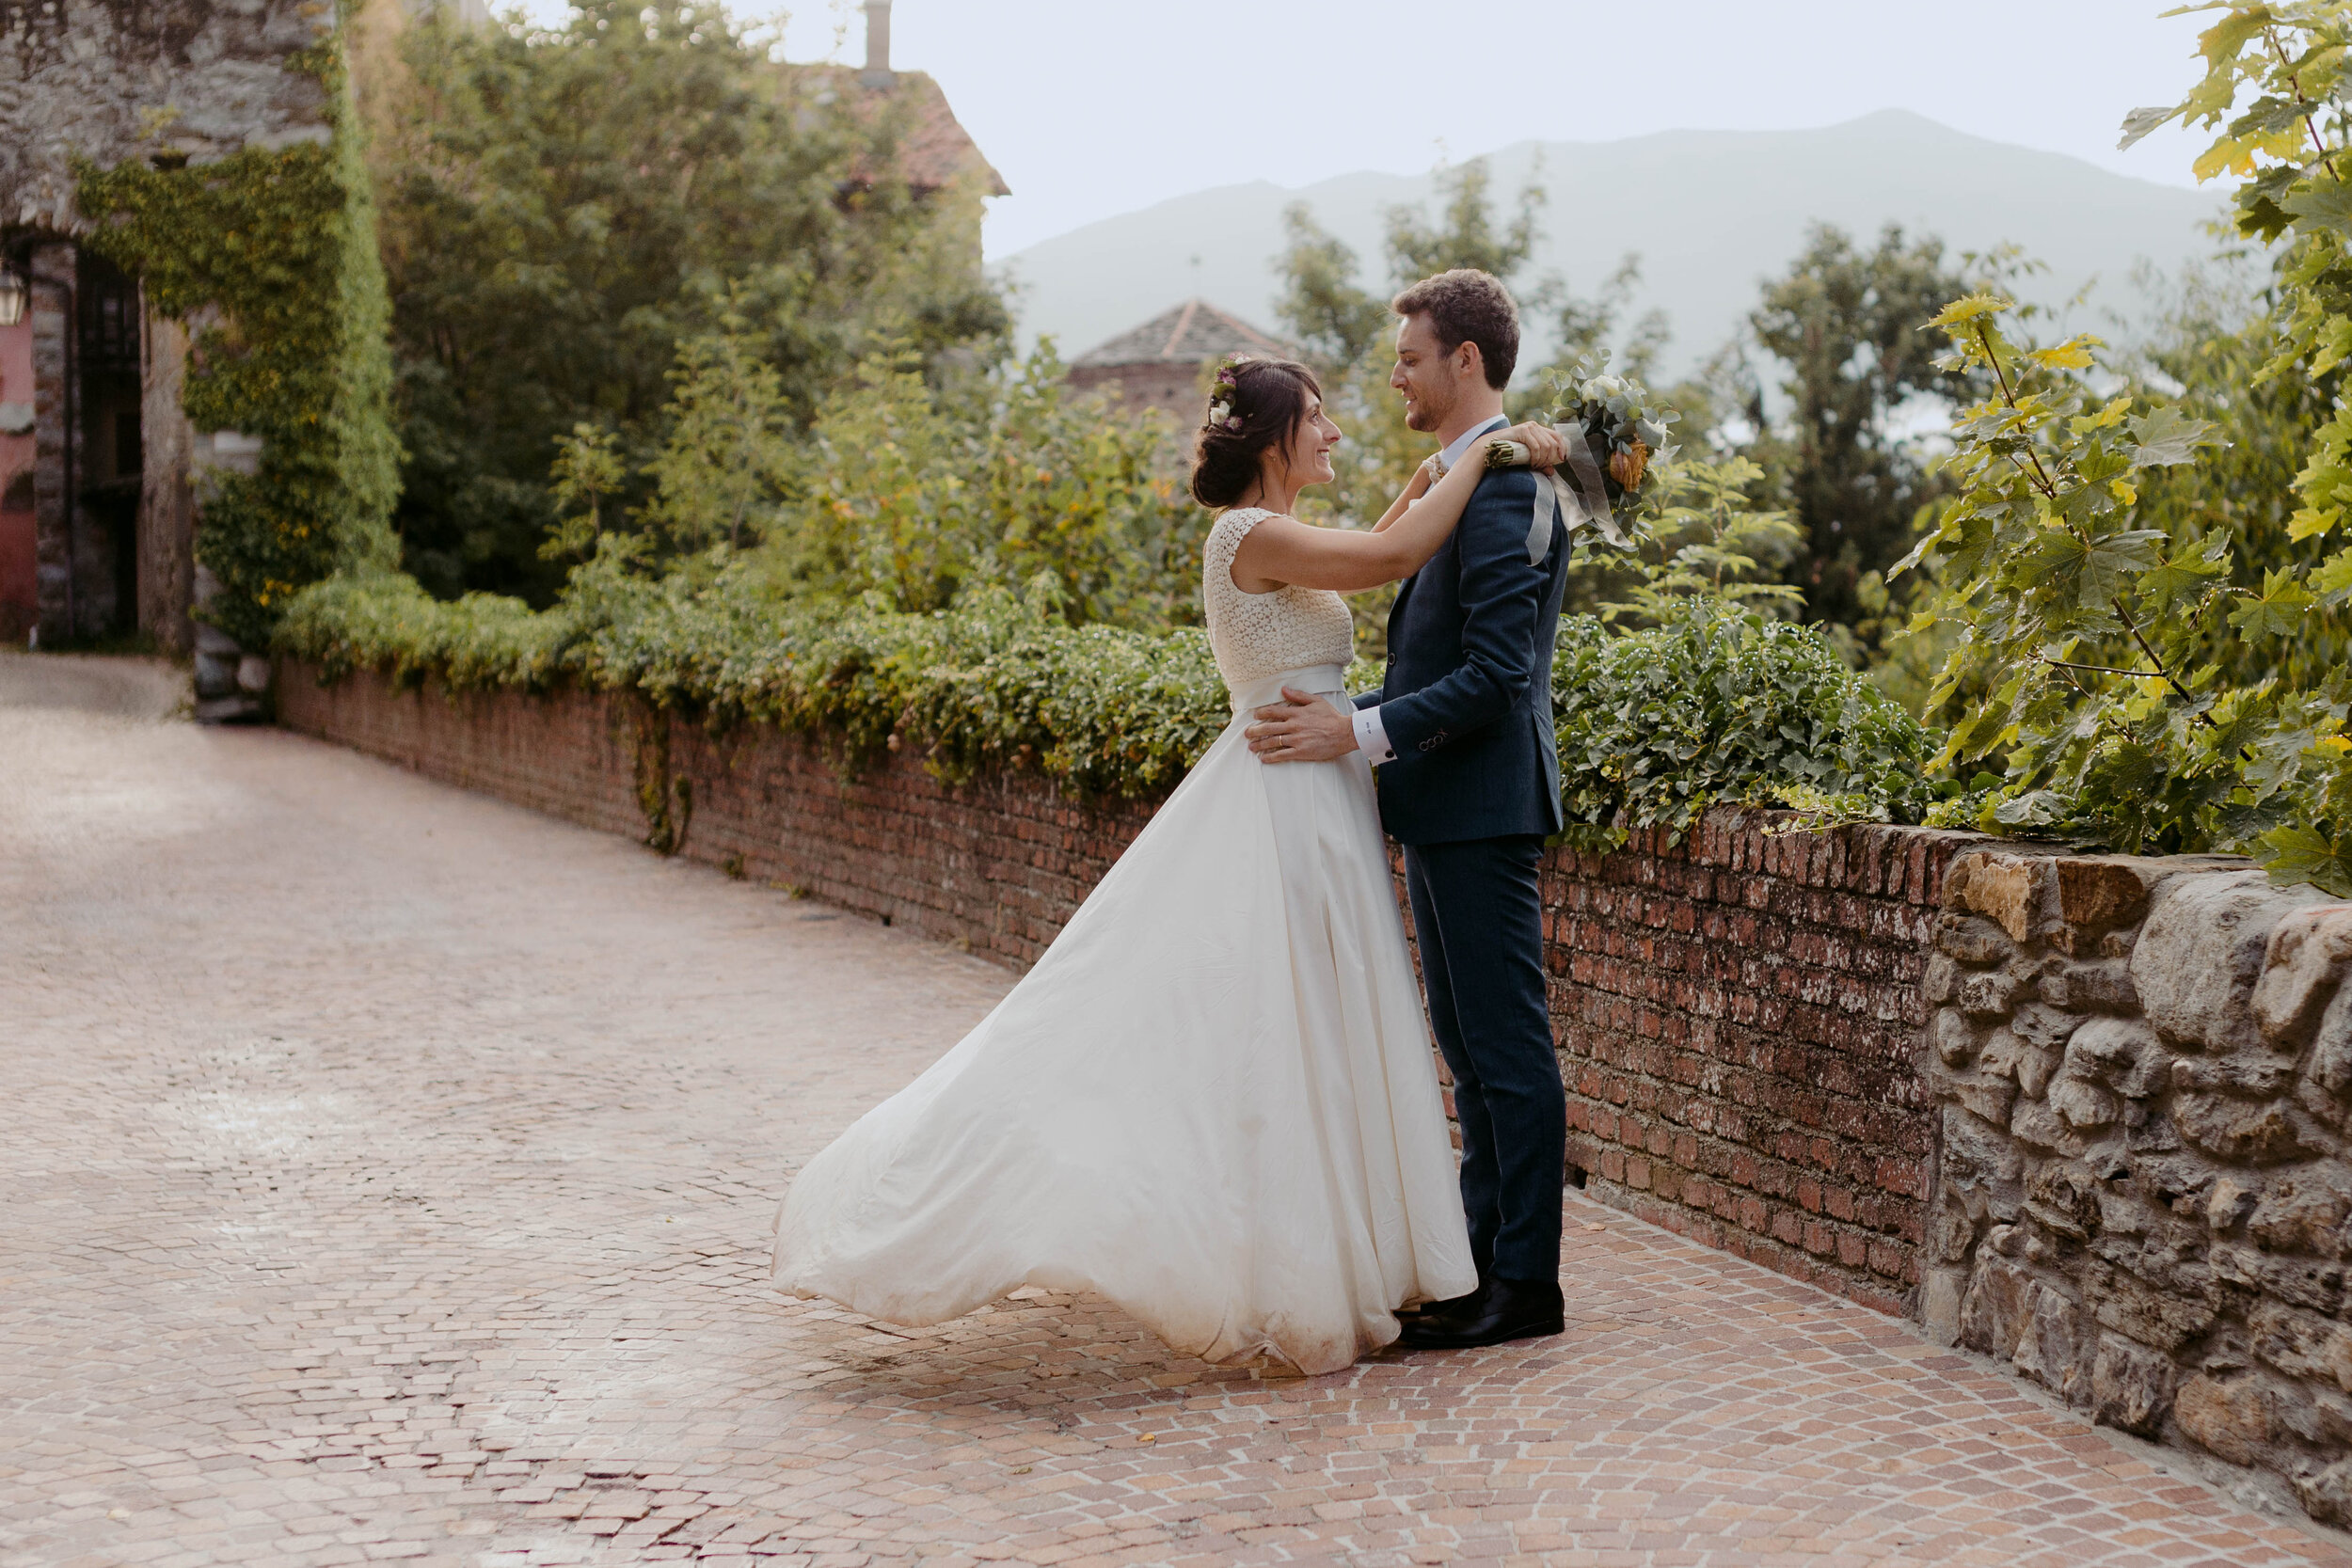 066 - Matrimonio in provincia di Cuneo - Miriam Callegari Fotografa.JPG